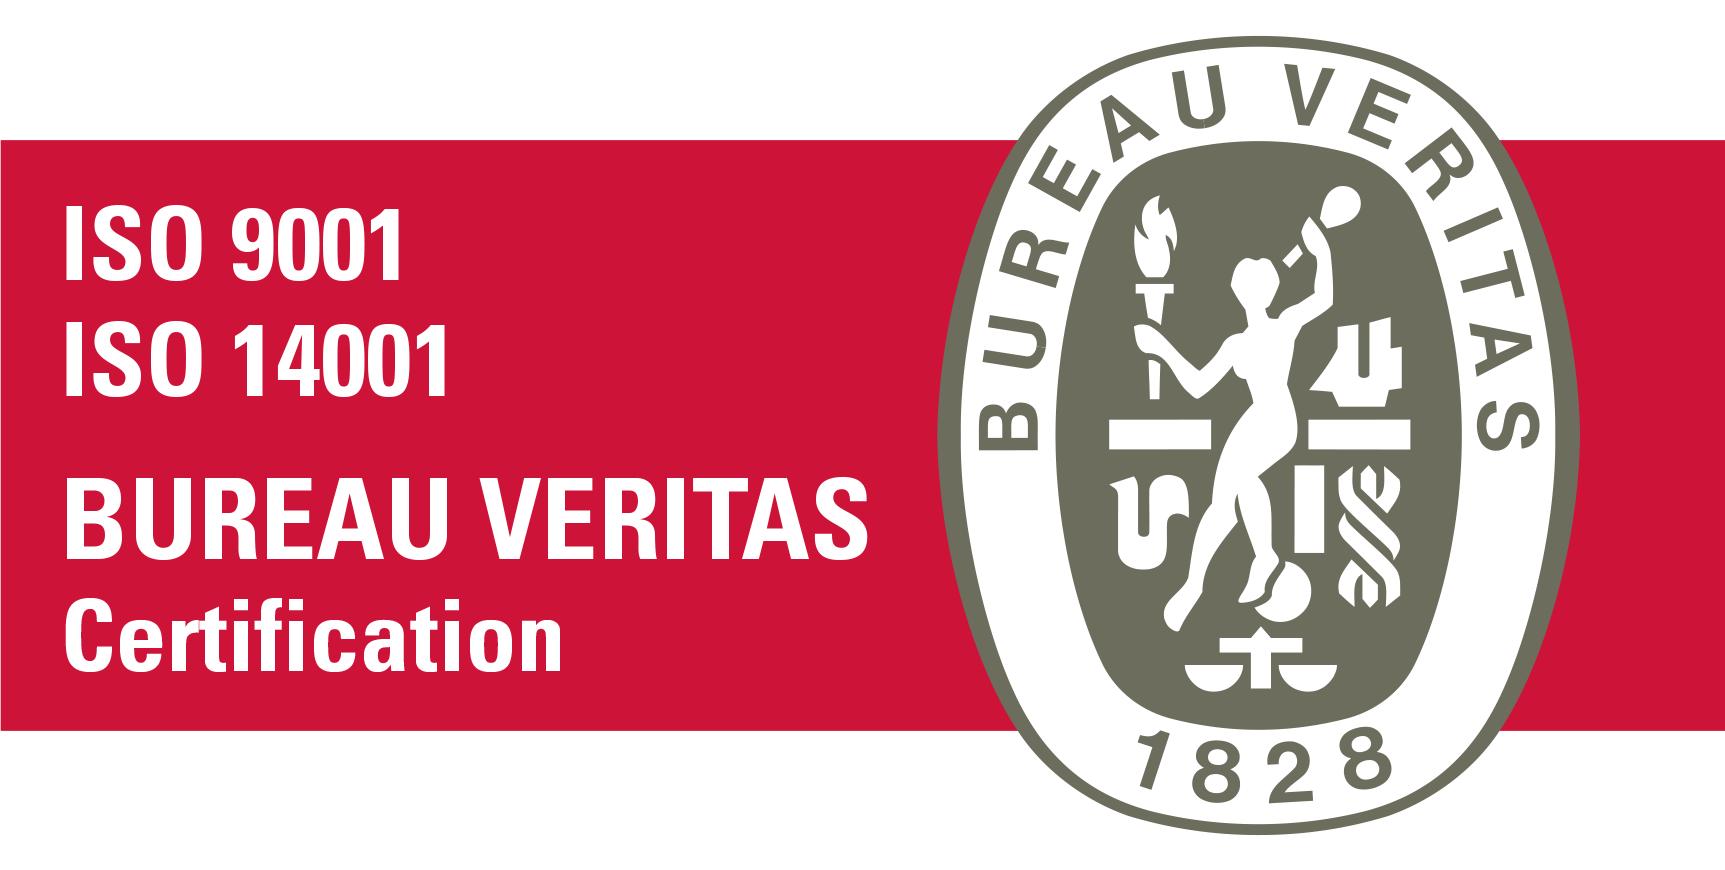 Bureau veritas Certification